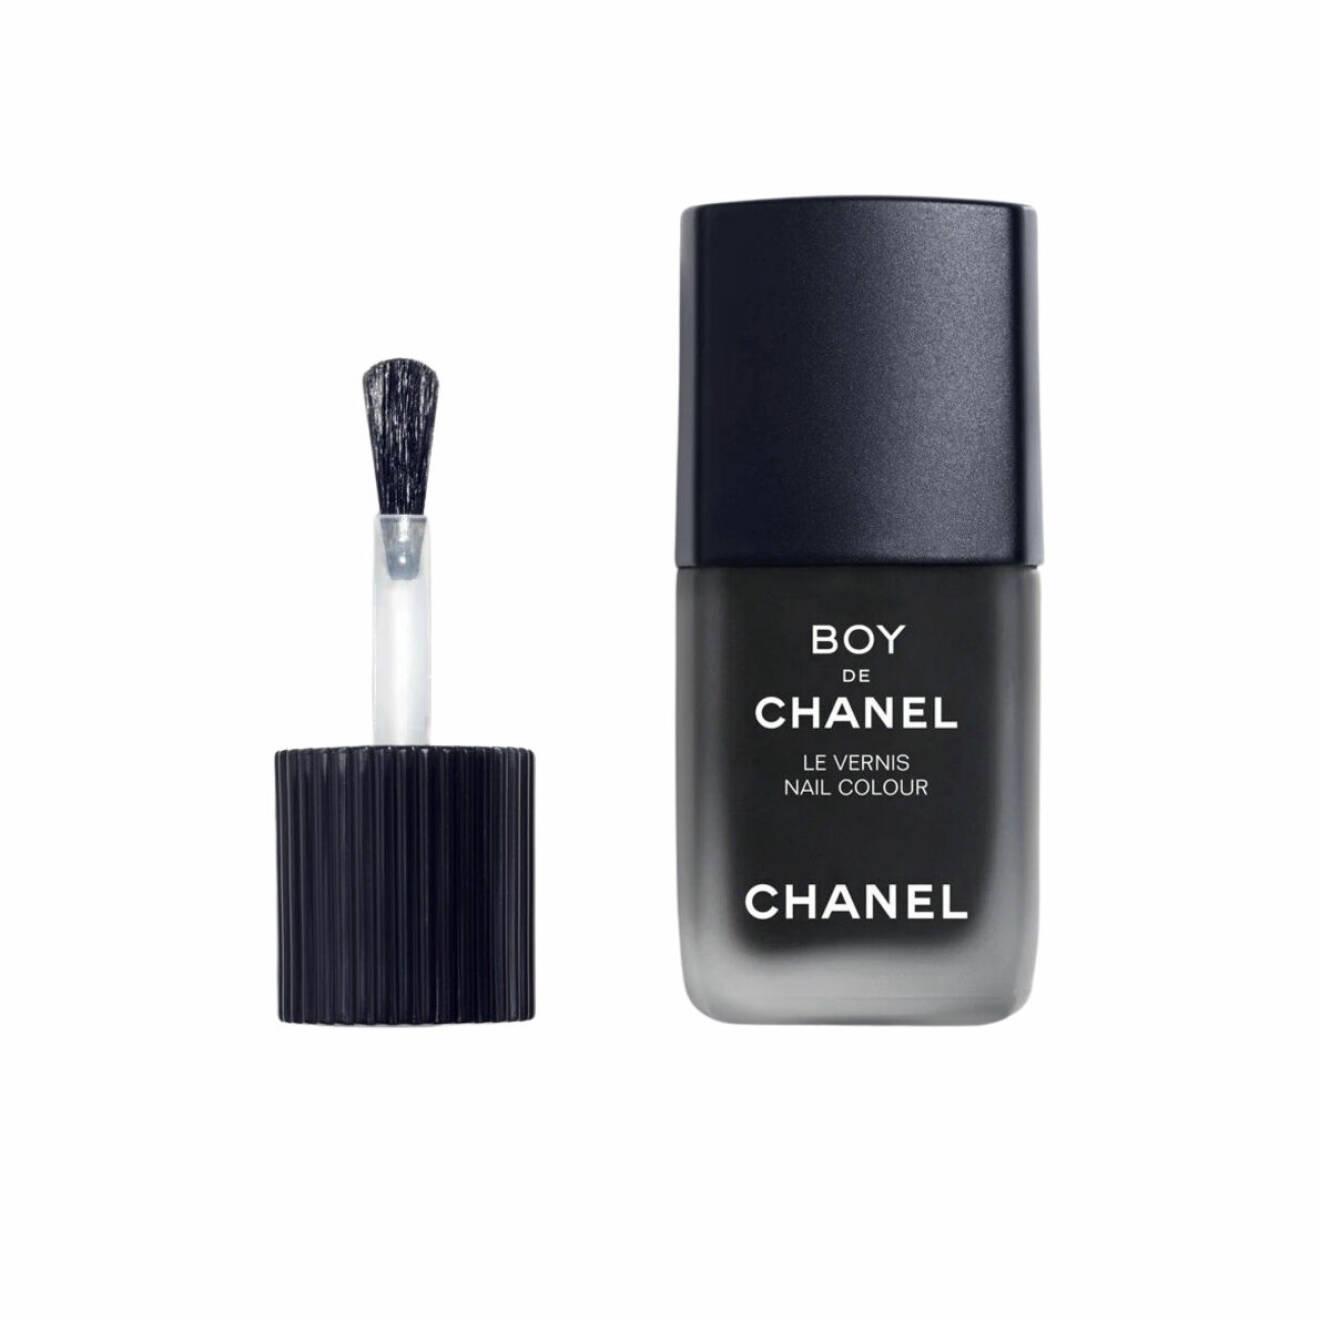 Svart matt nagellack från Chanel.